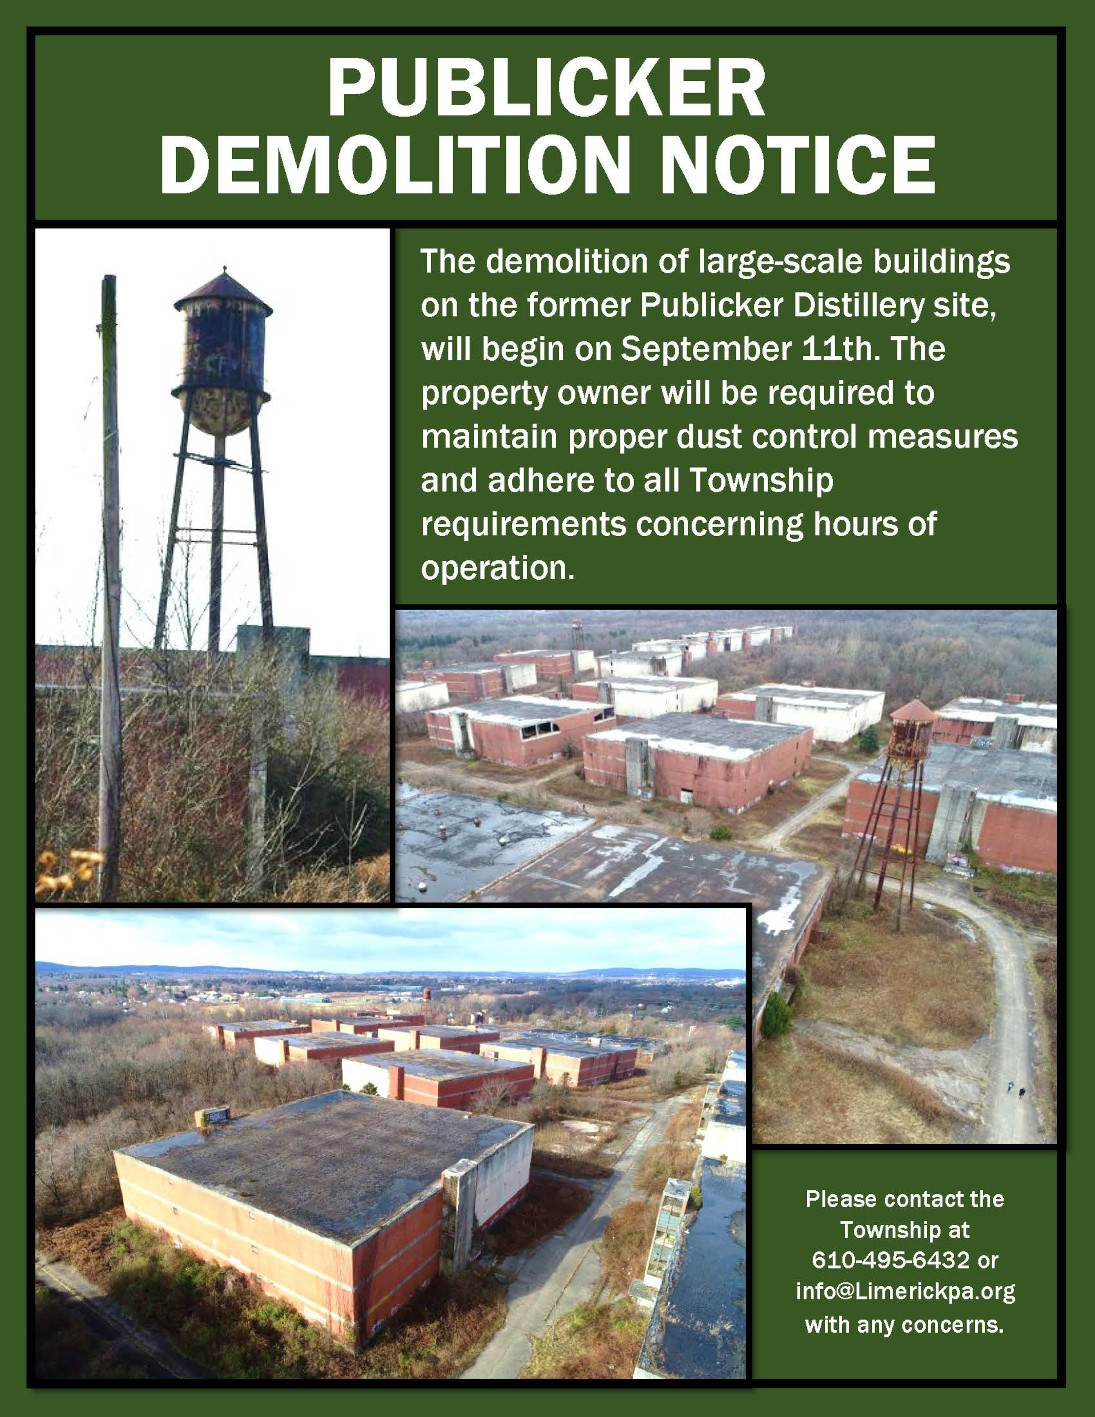 Publicker Buildings Demolition Set to Start Sept. 11